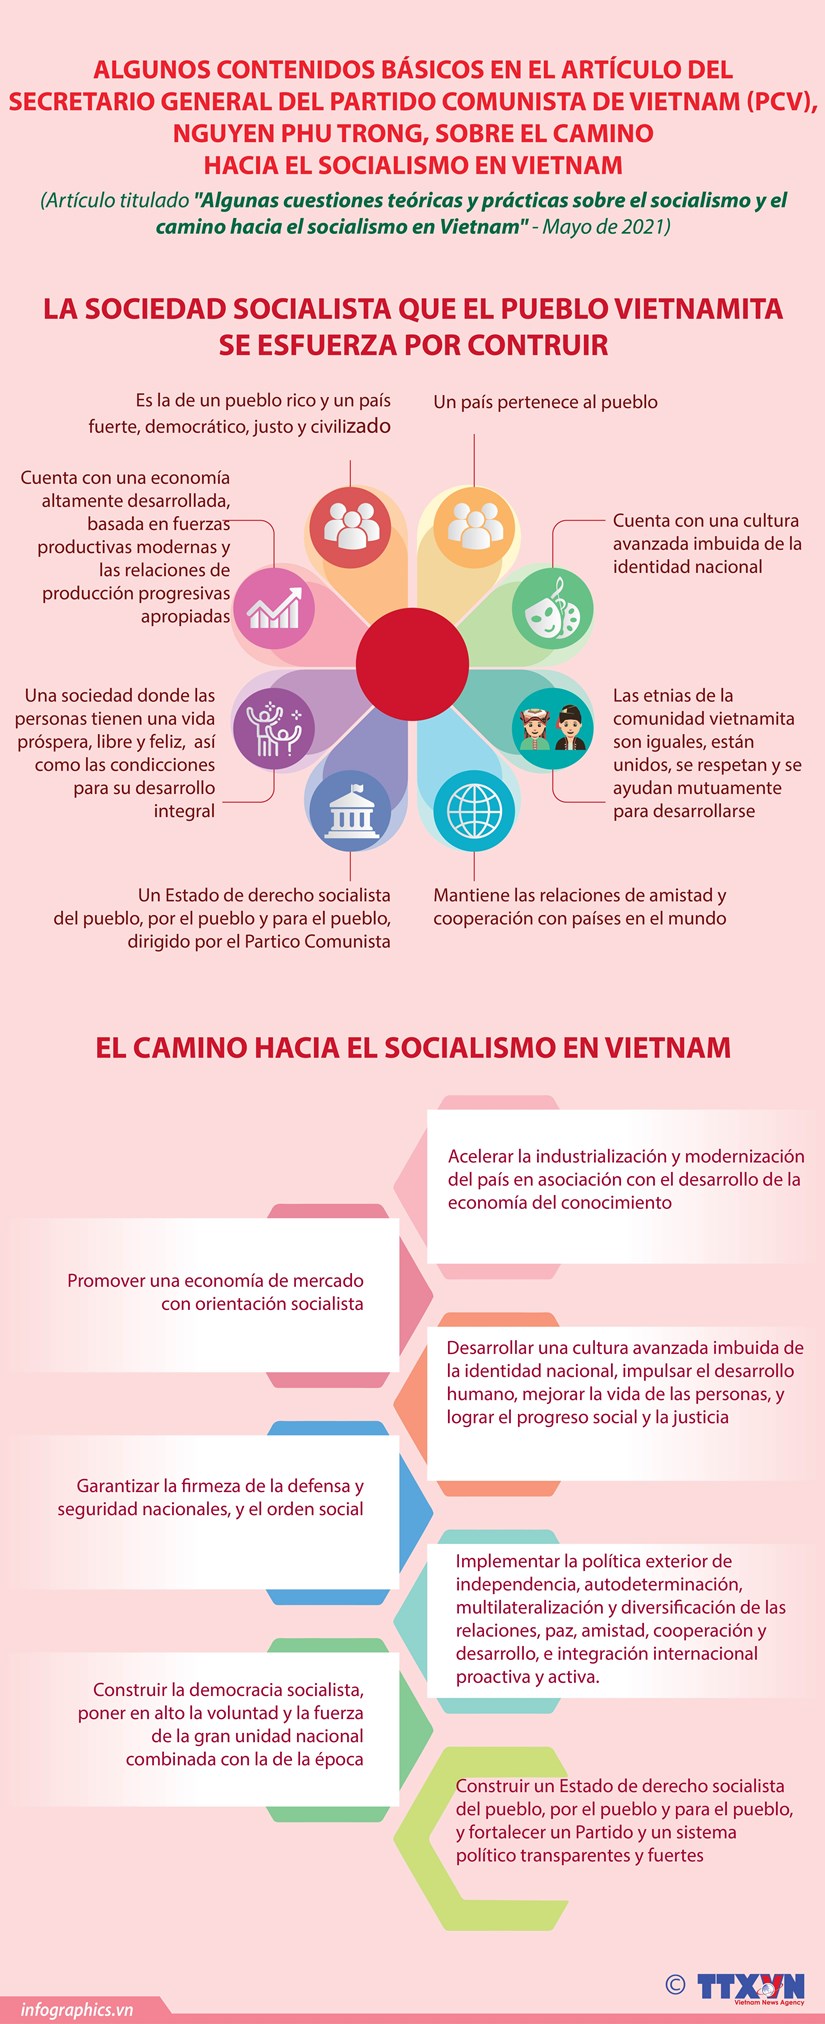 Algunas cuestiones teoricas y practicas, el camino hacia el socialismo en Vietnam hinh anh 1